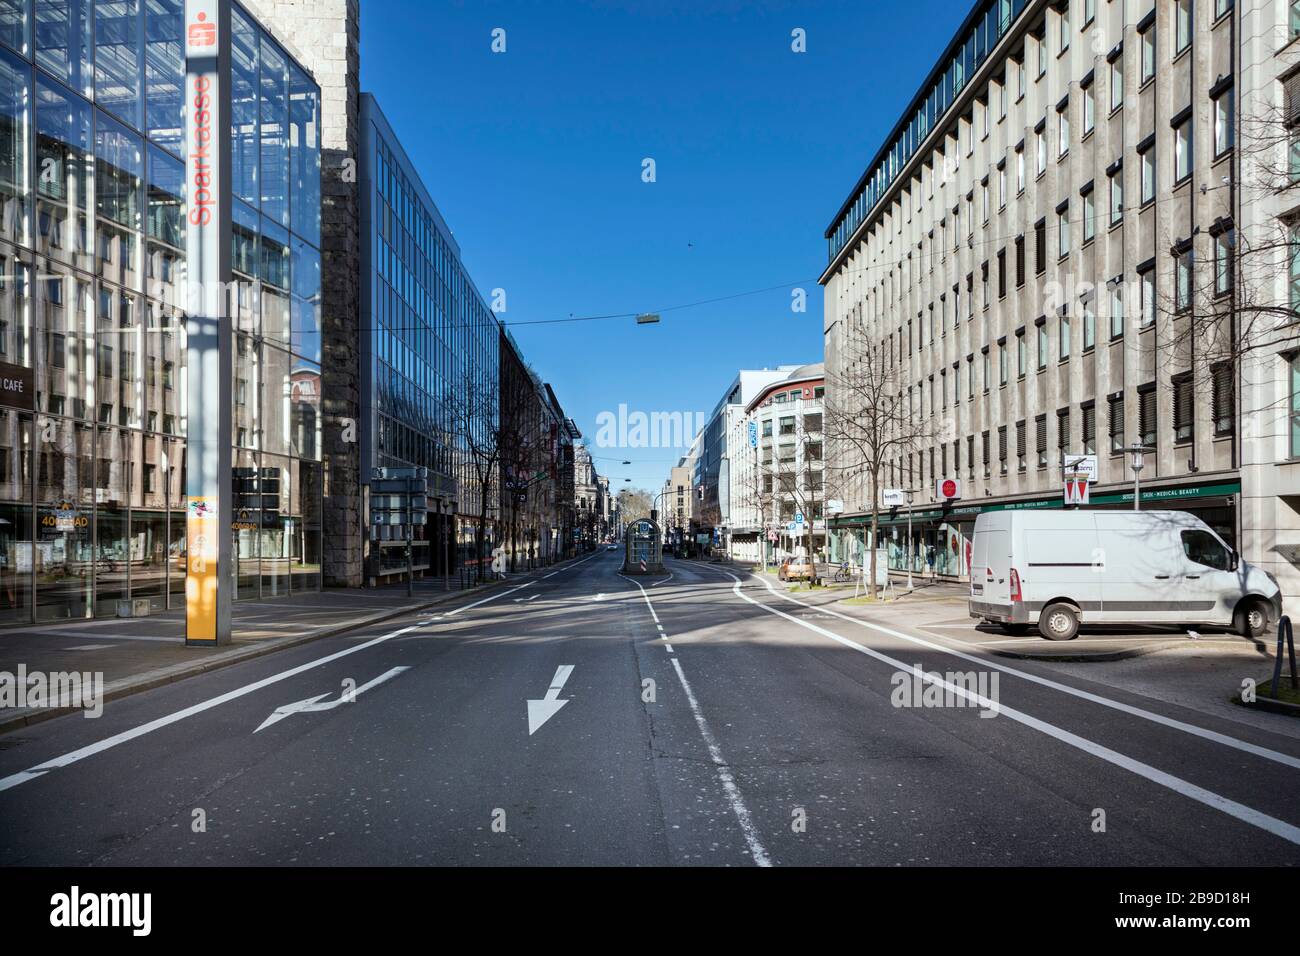 Città insolitamente vuota a causa di misure contro la diffusione del virus corona, qui la Steinstrasse Foto Stock